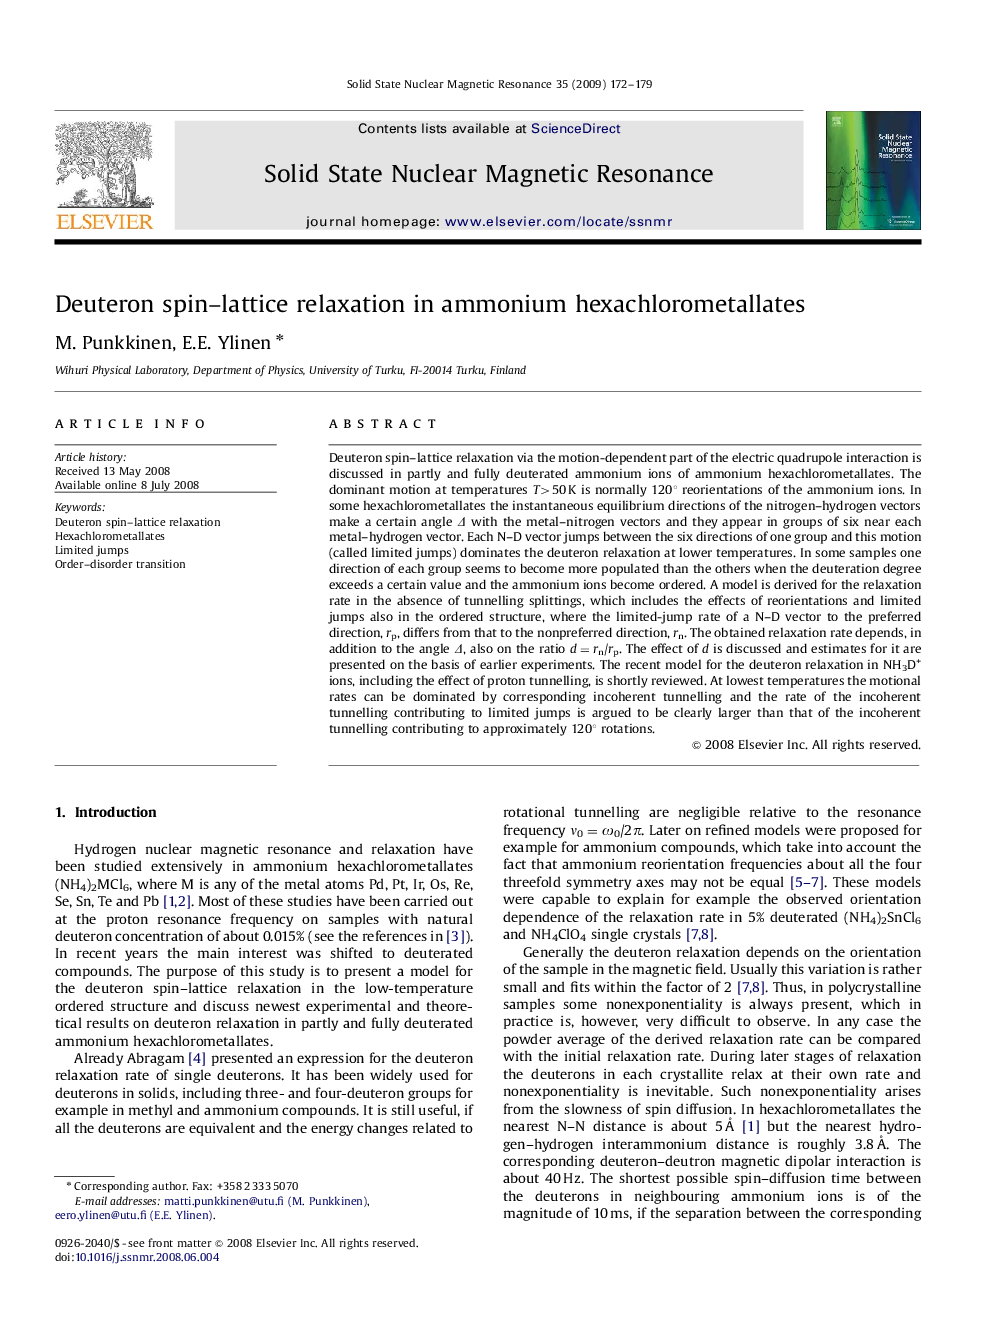 Deuteron spin-lattice relaxation in ammonium hexachlorometallates